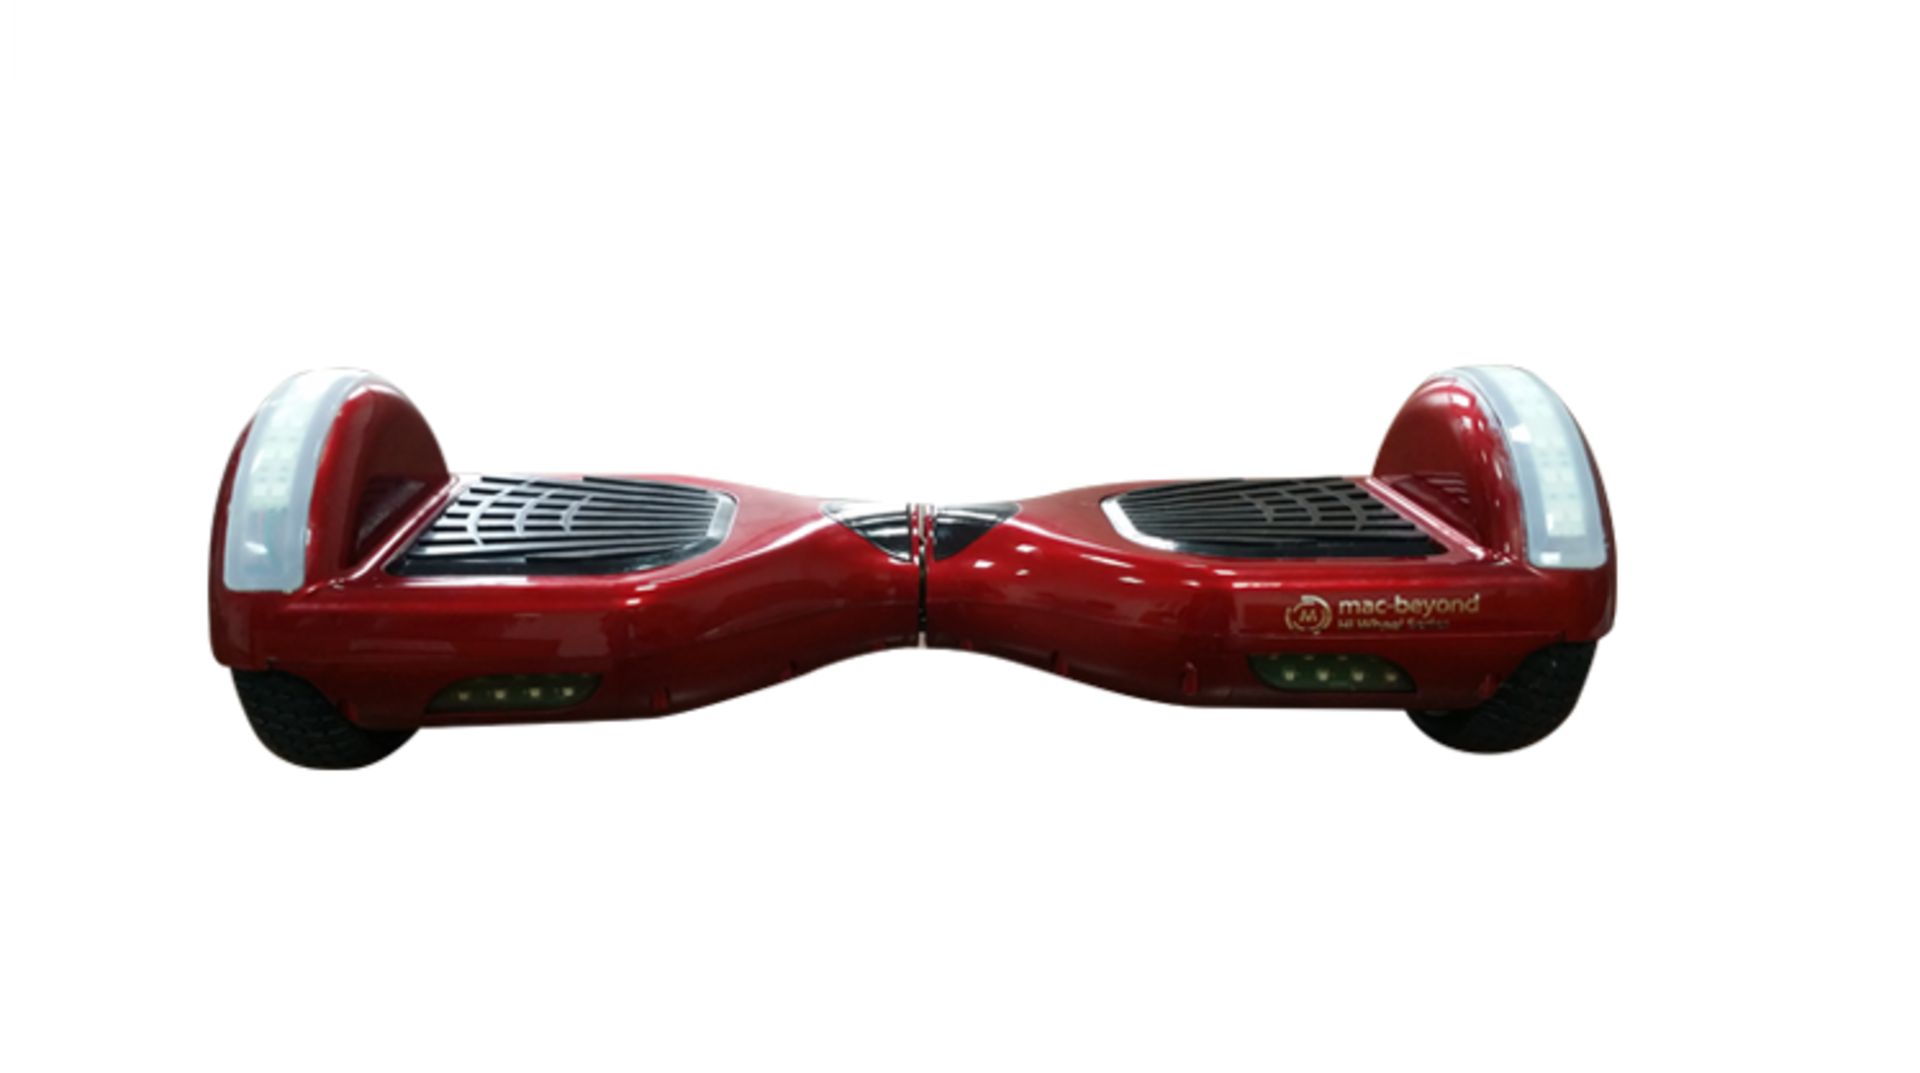 macbeyond x Hi wheel Series, Red Modelæ R2 LED (6.5 inch wheels, Best Seller) Smart personal - Image 2 of 10